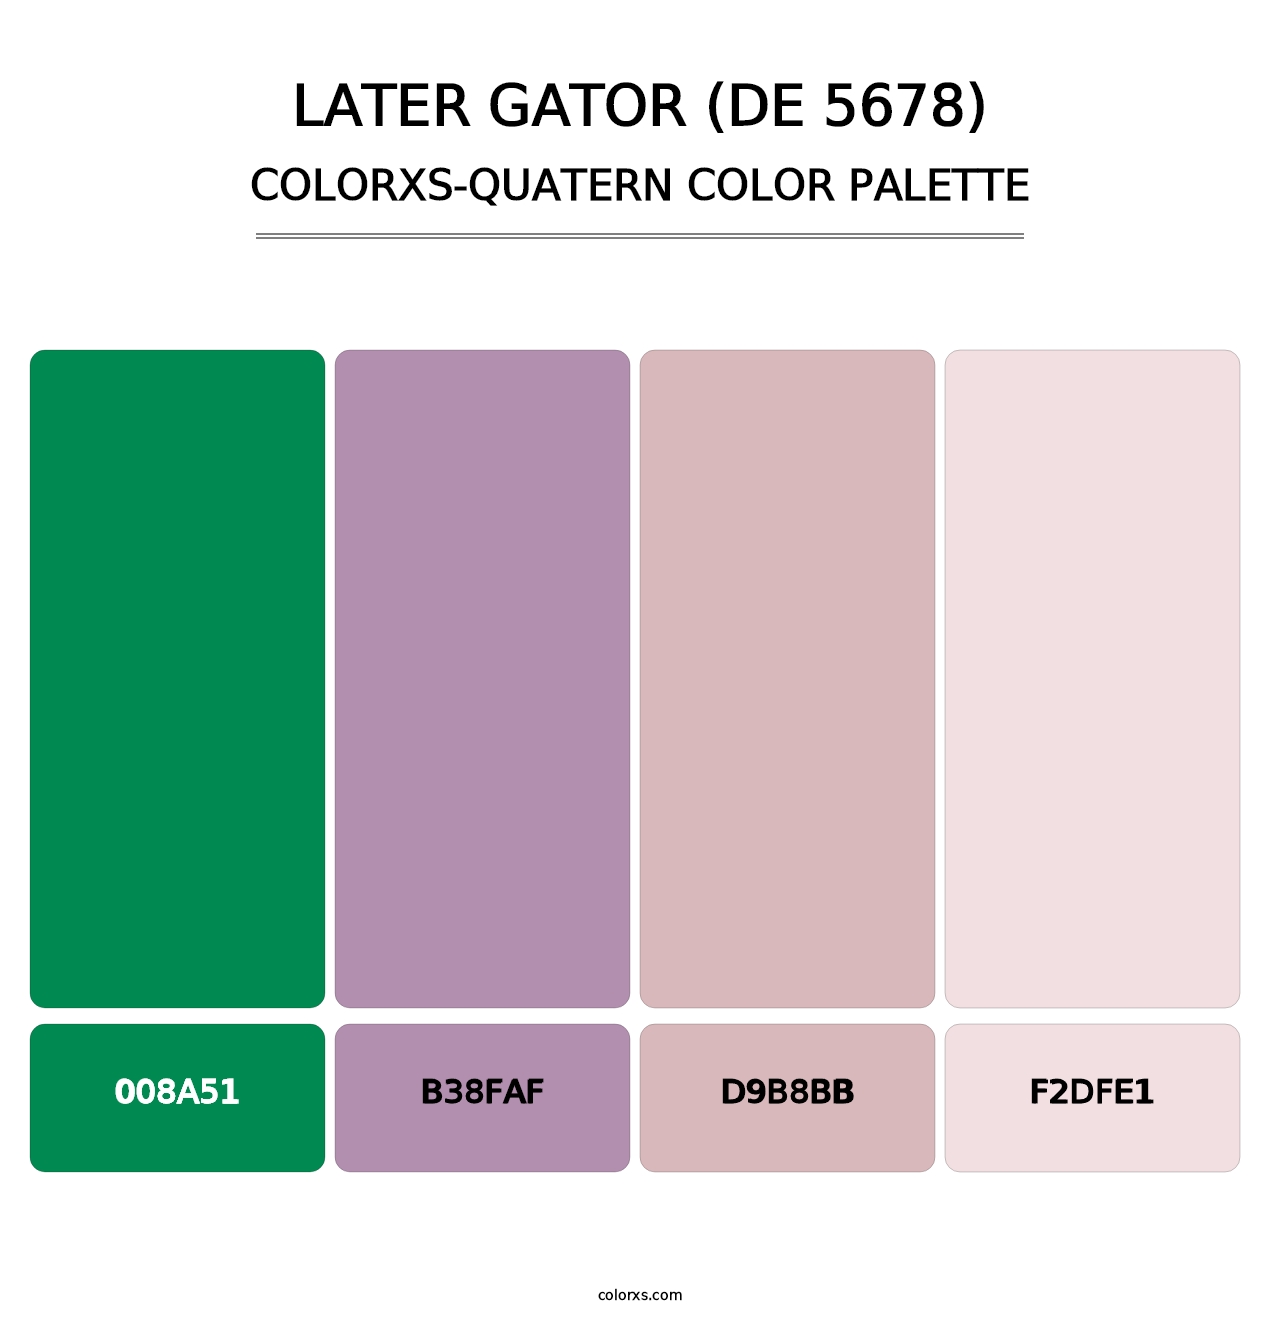 Later Gator (DE 5678) - Colorxs Quatern Palette